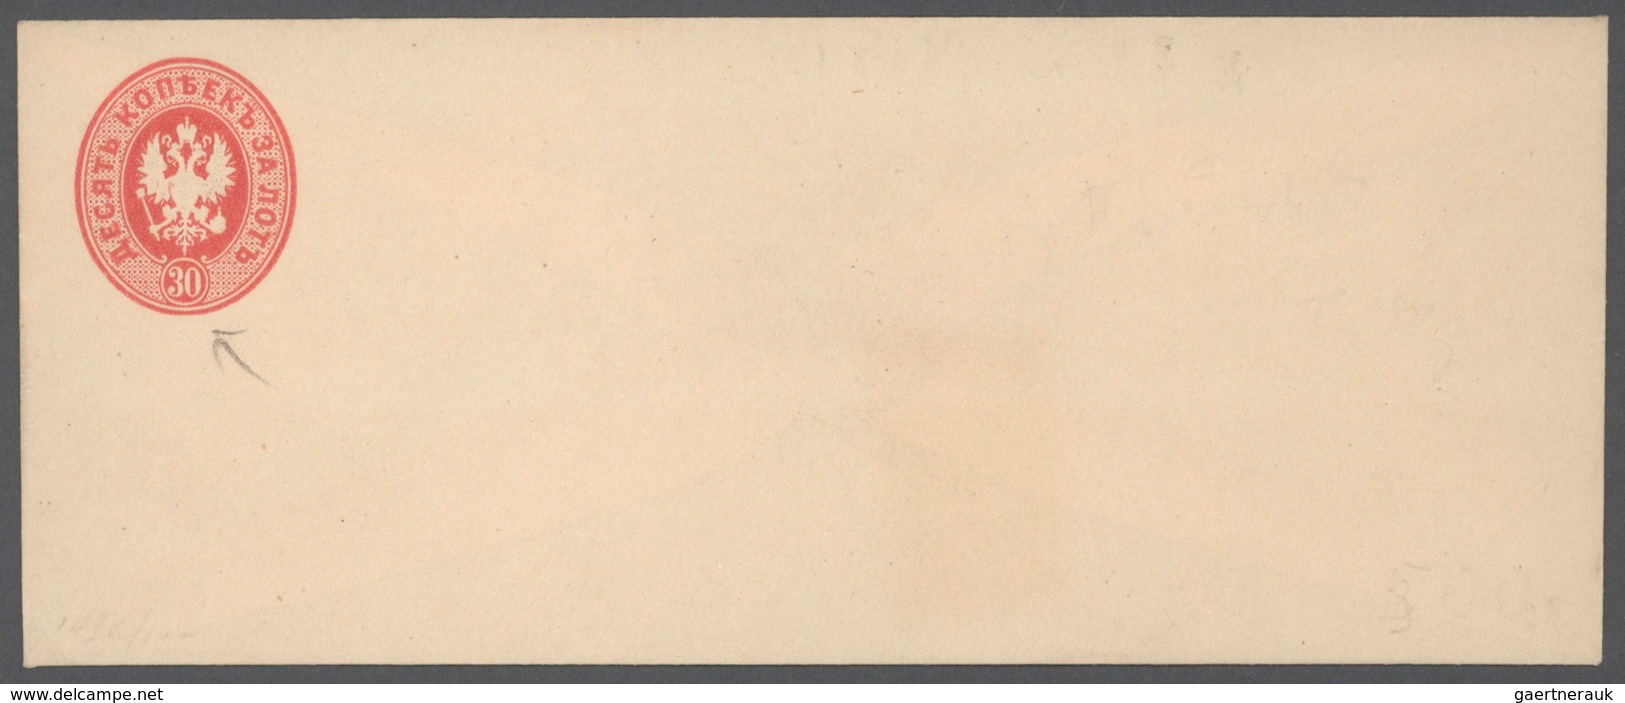 Russland - Ganzsachen: 1868, 30 Kop, Postal Stationery Envelope PROOF. - Postwaardestukken